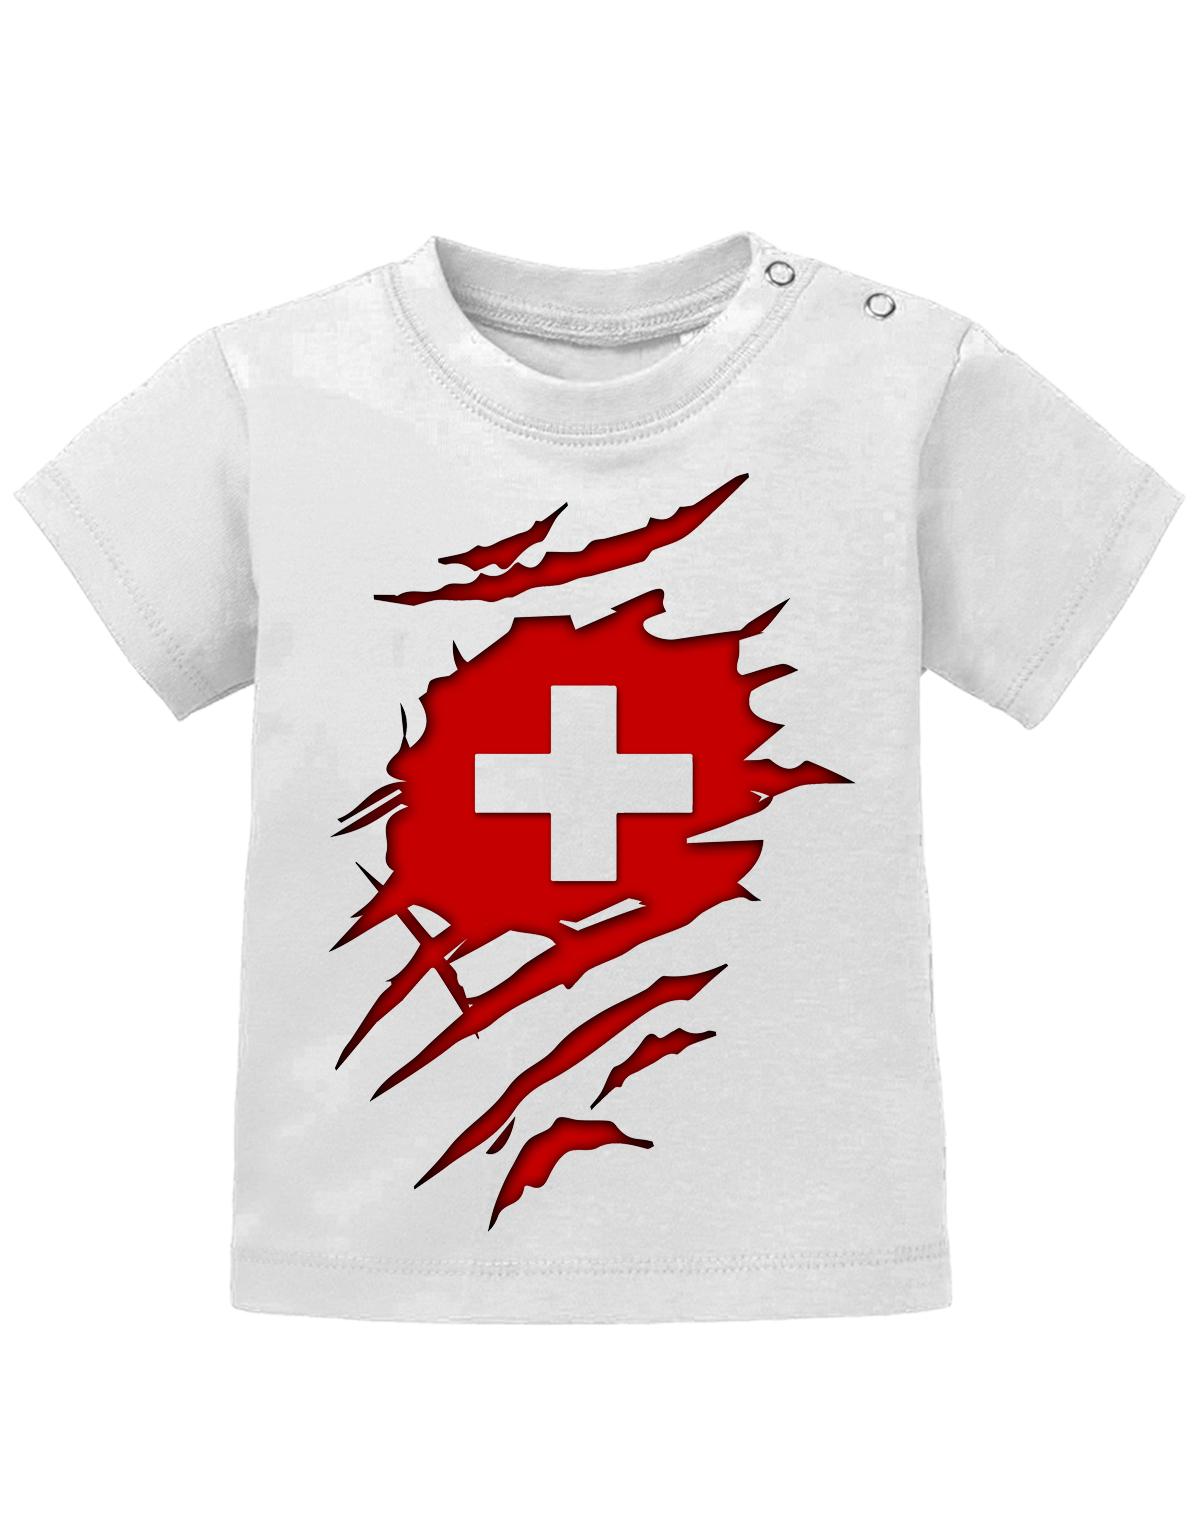 Schweiz T Shirt für Junge und Mädchen. Schweizer Flagge Design aufgerissen, damit man sieht, dass ein Schweizer im Shirt steckt.